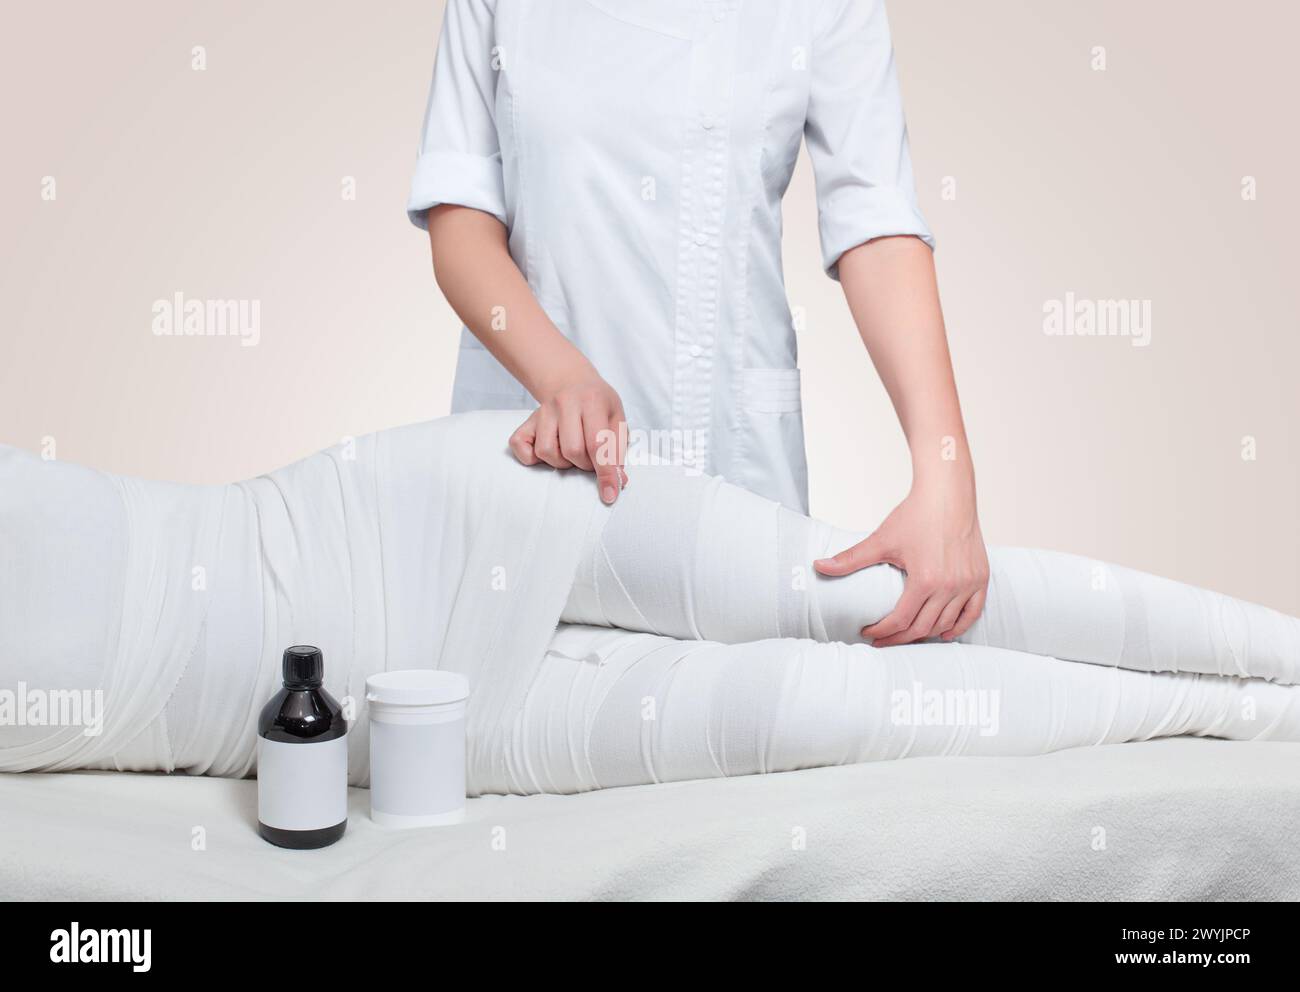 Die kosmetologin wickelt das Bein des Kunden. Anti-cellulite-Verfahren - STYX wickeln. Stockfoto